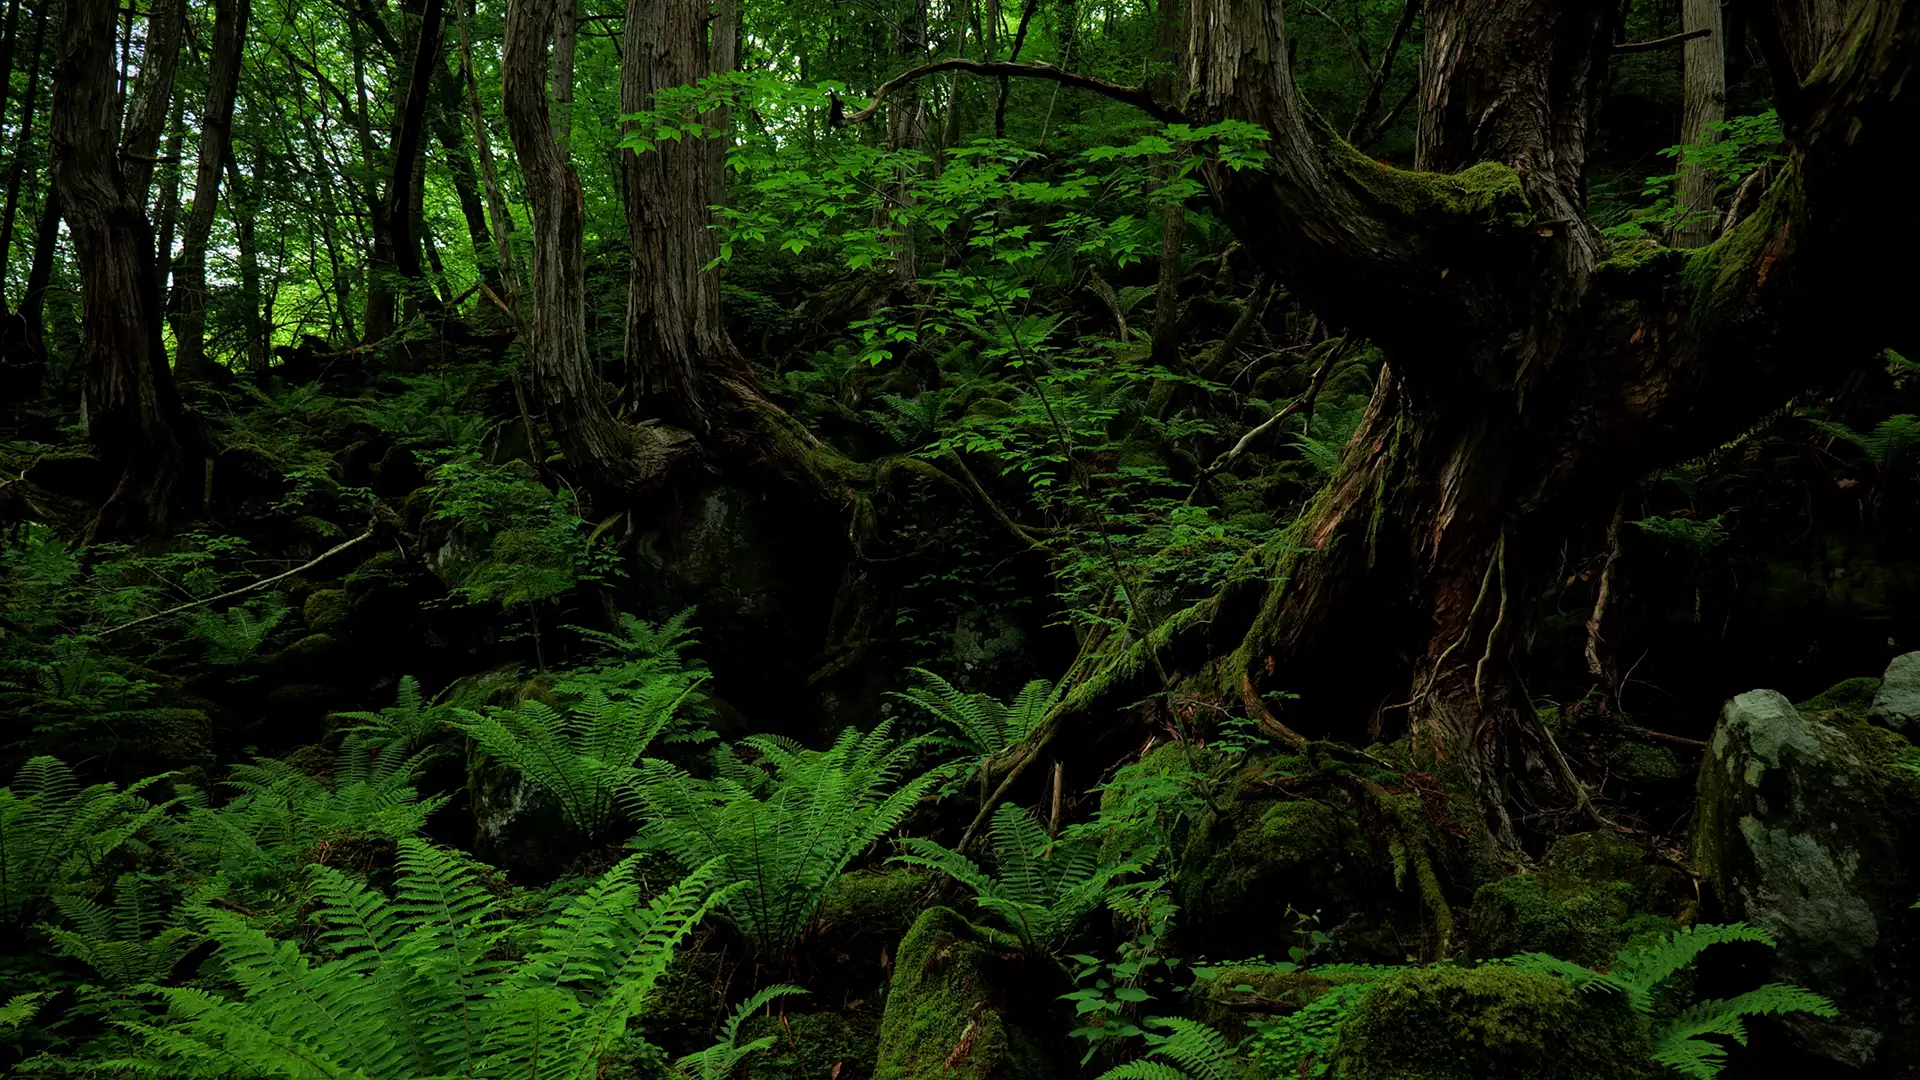 緑美しい静かな森・雨景色【RELAX WORLD】